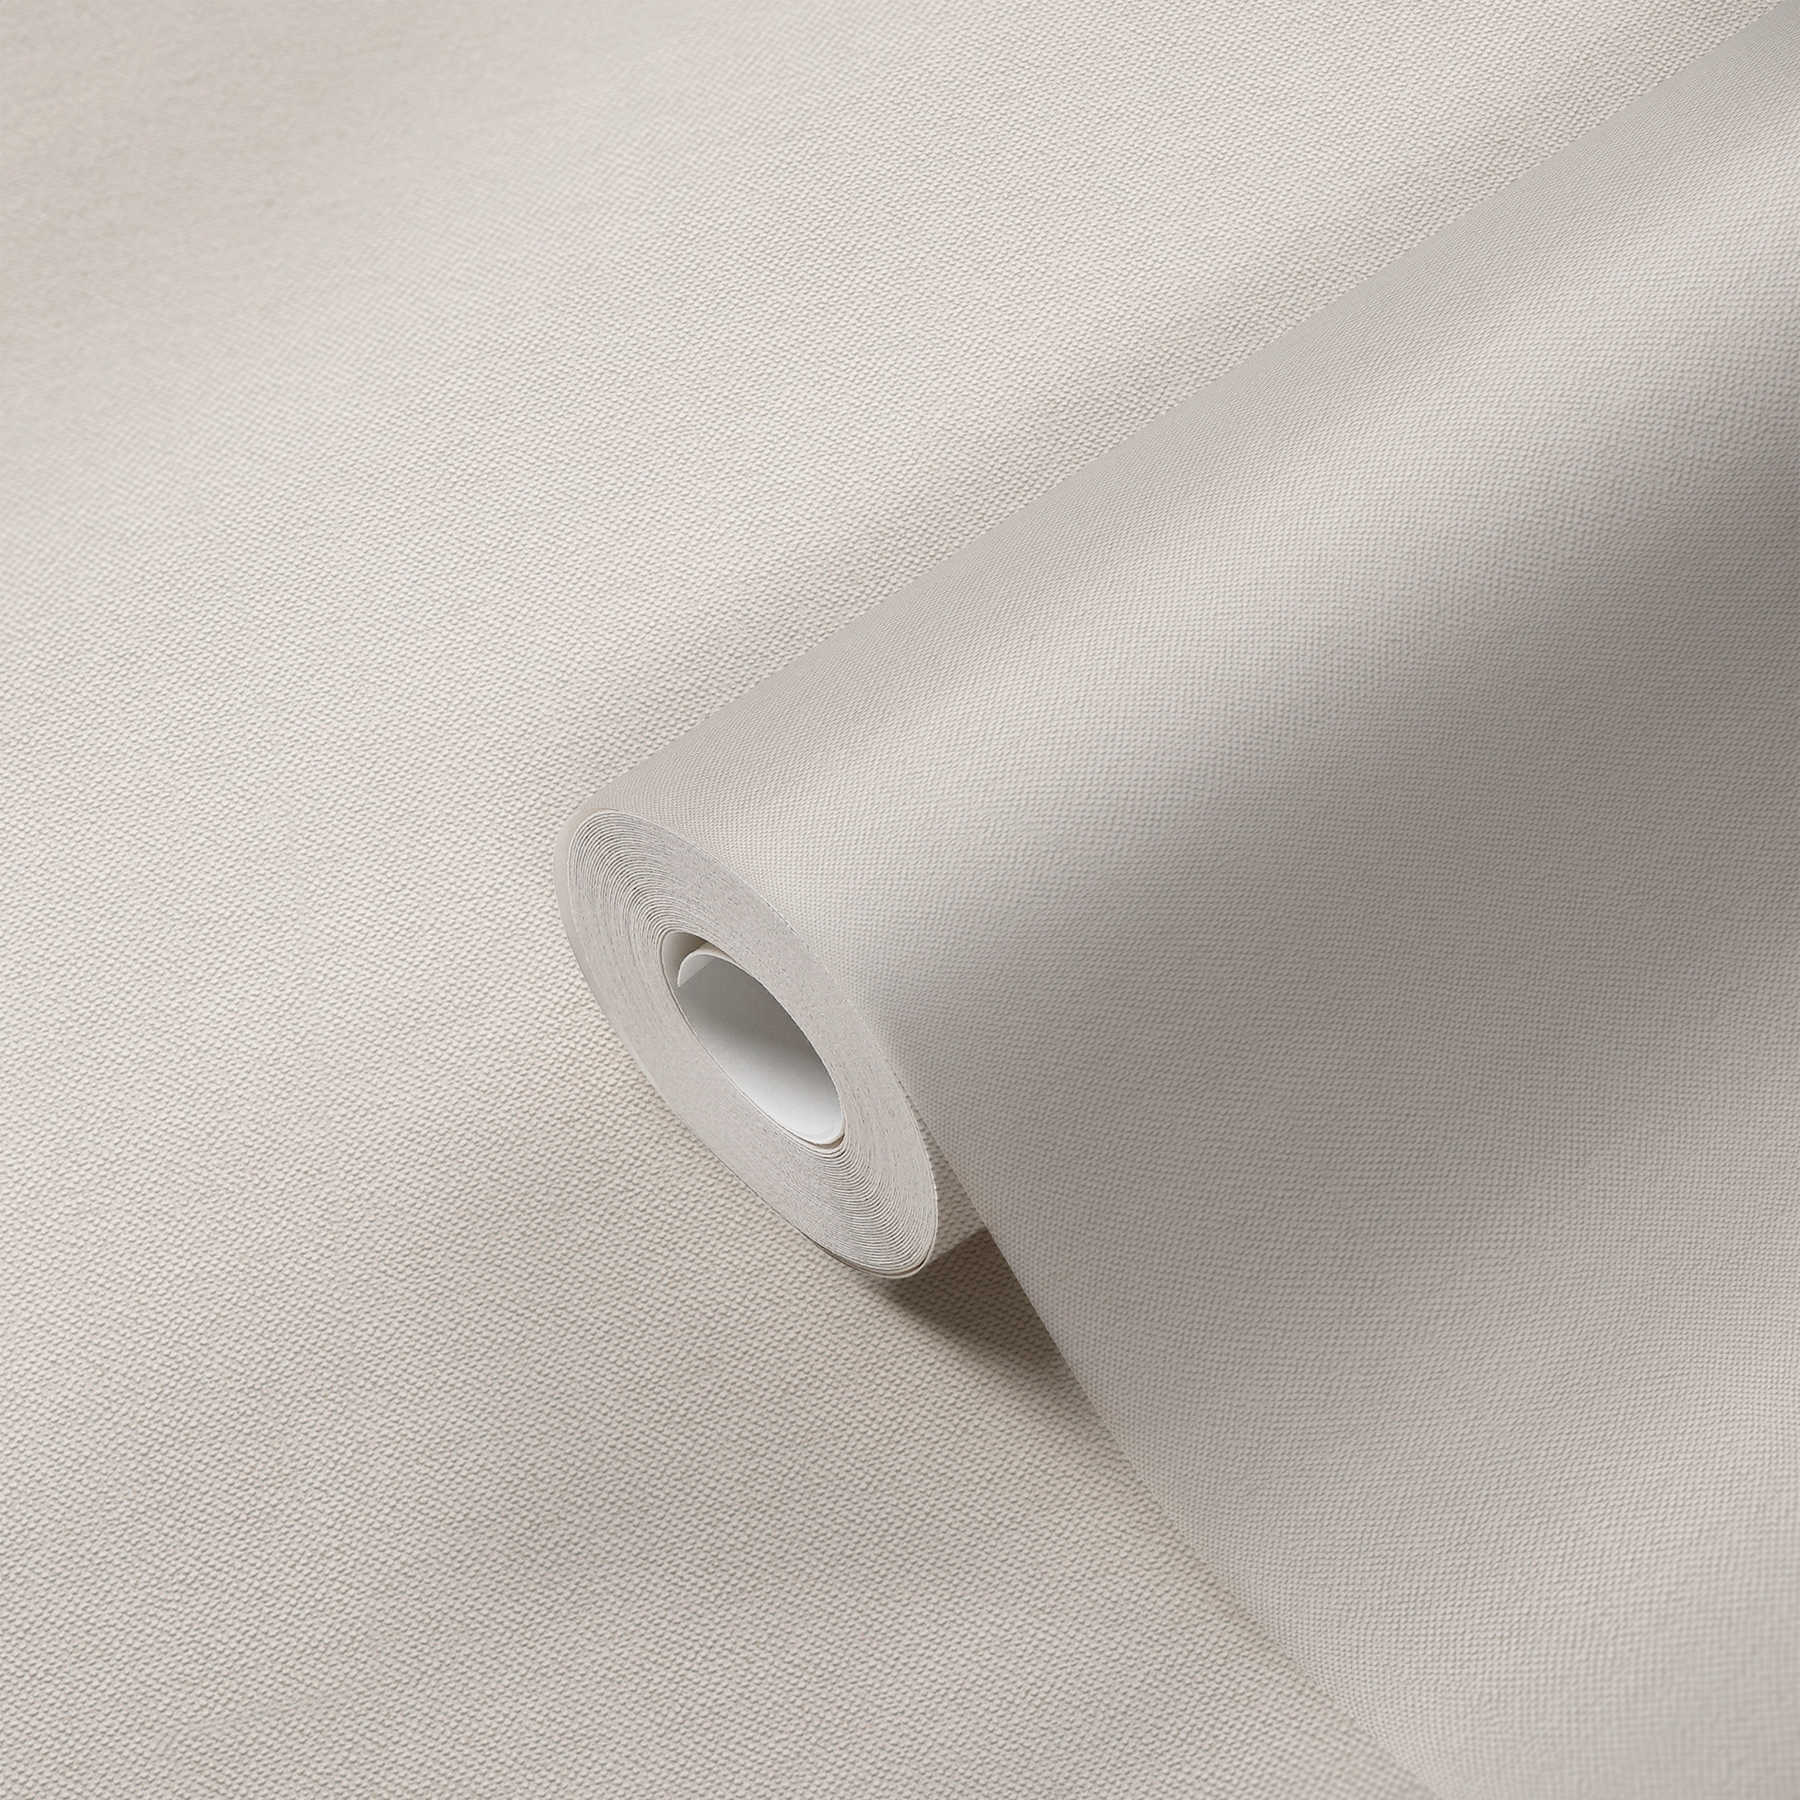             Plain wallpaper cream with textile structure in elegant design
        